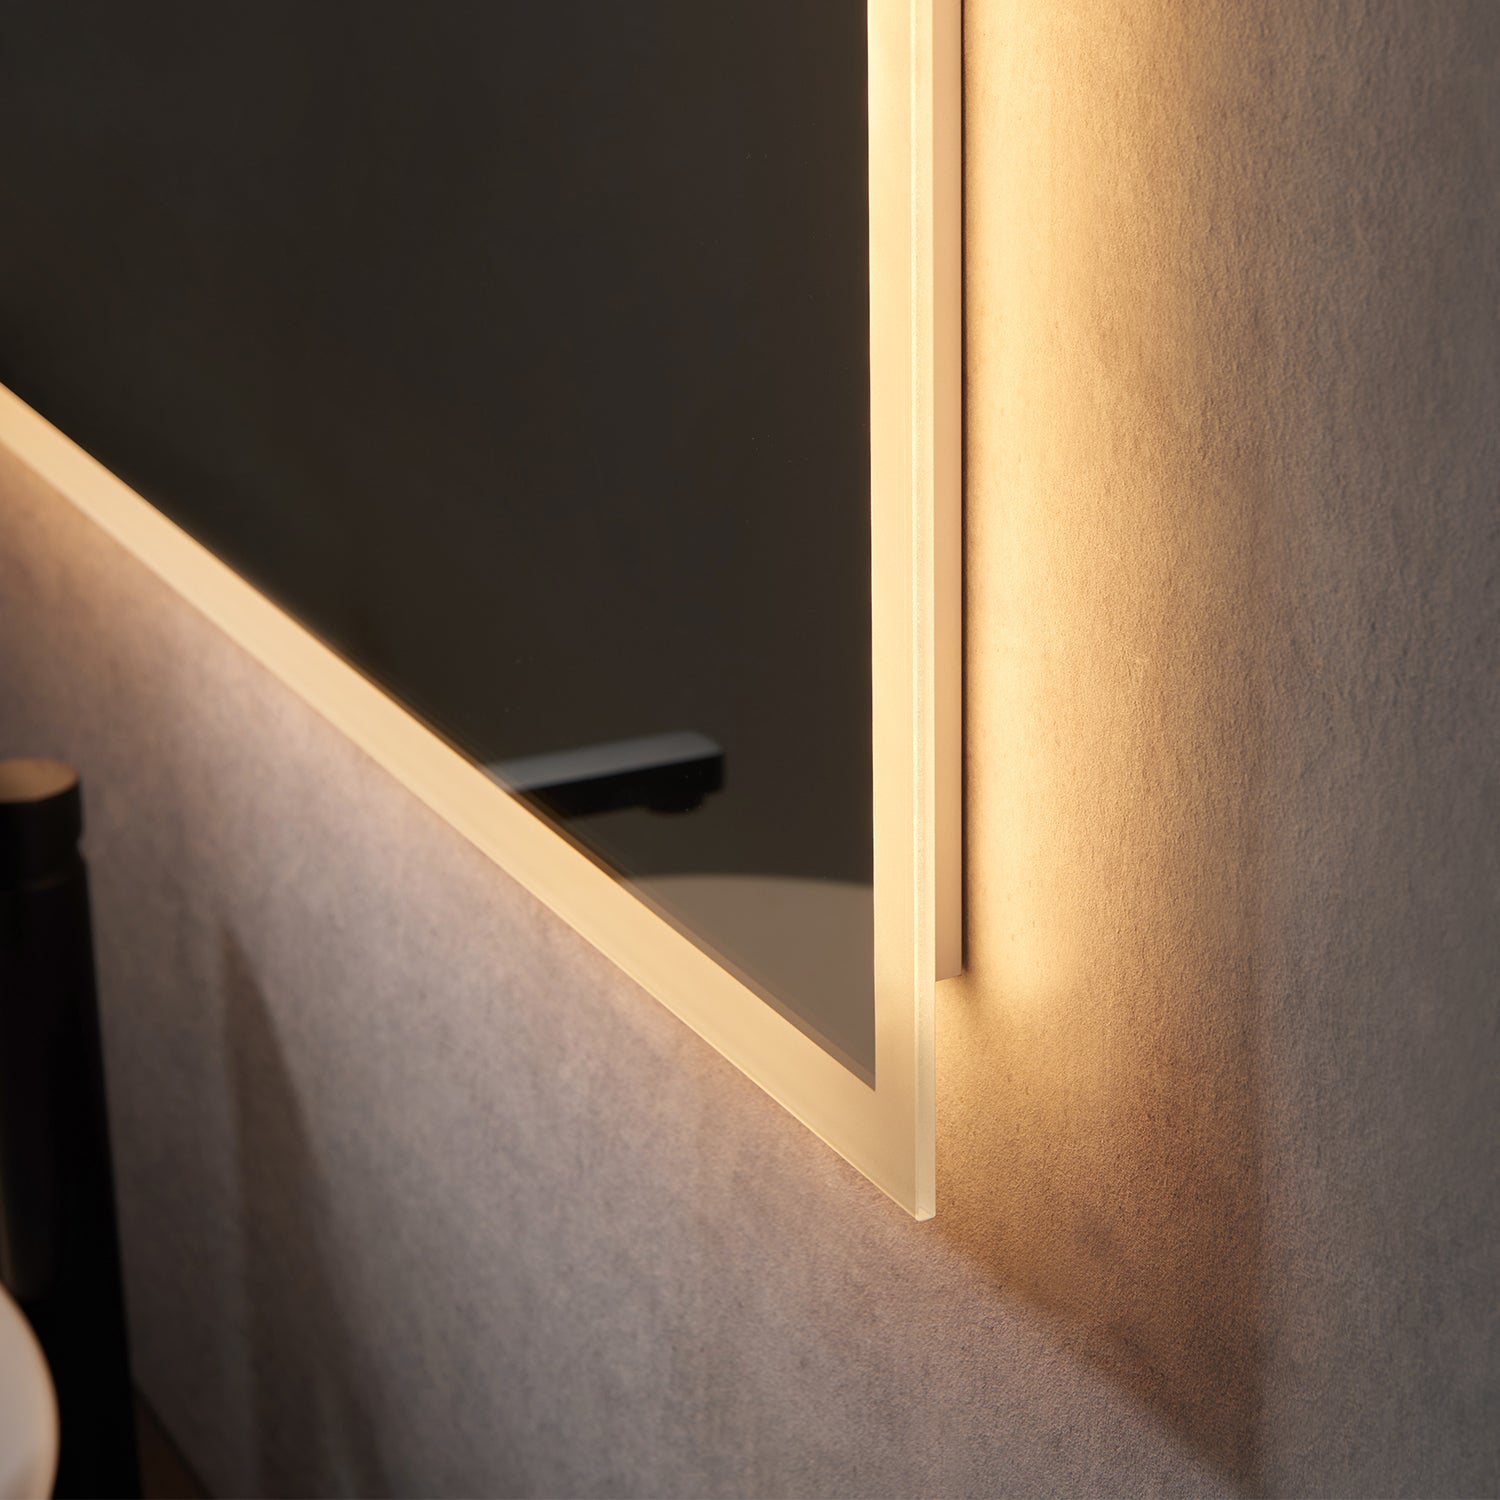 Cassano Rectangle Frameless Modern Bathroom Vanity LED Lighted Wall Mirror